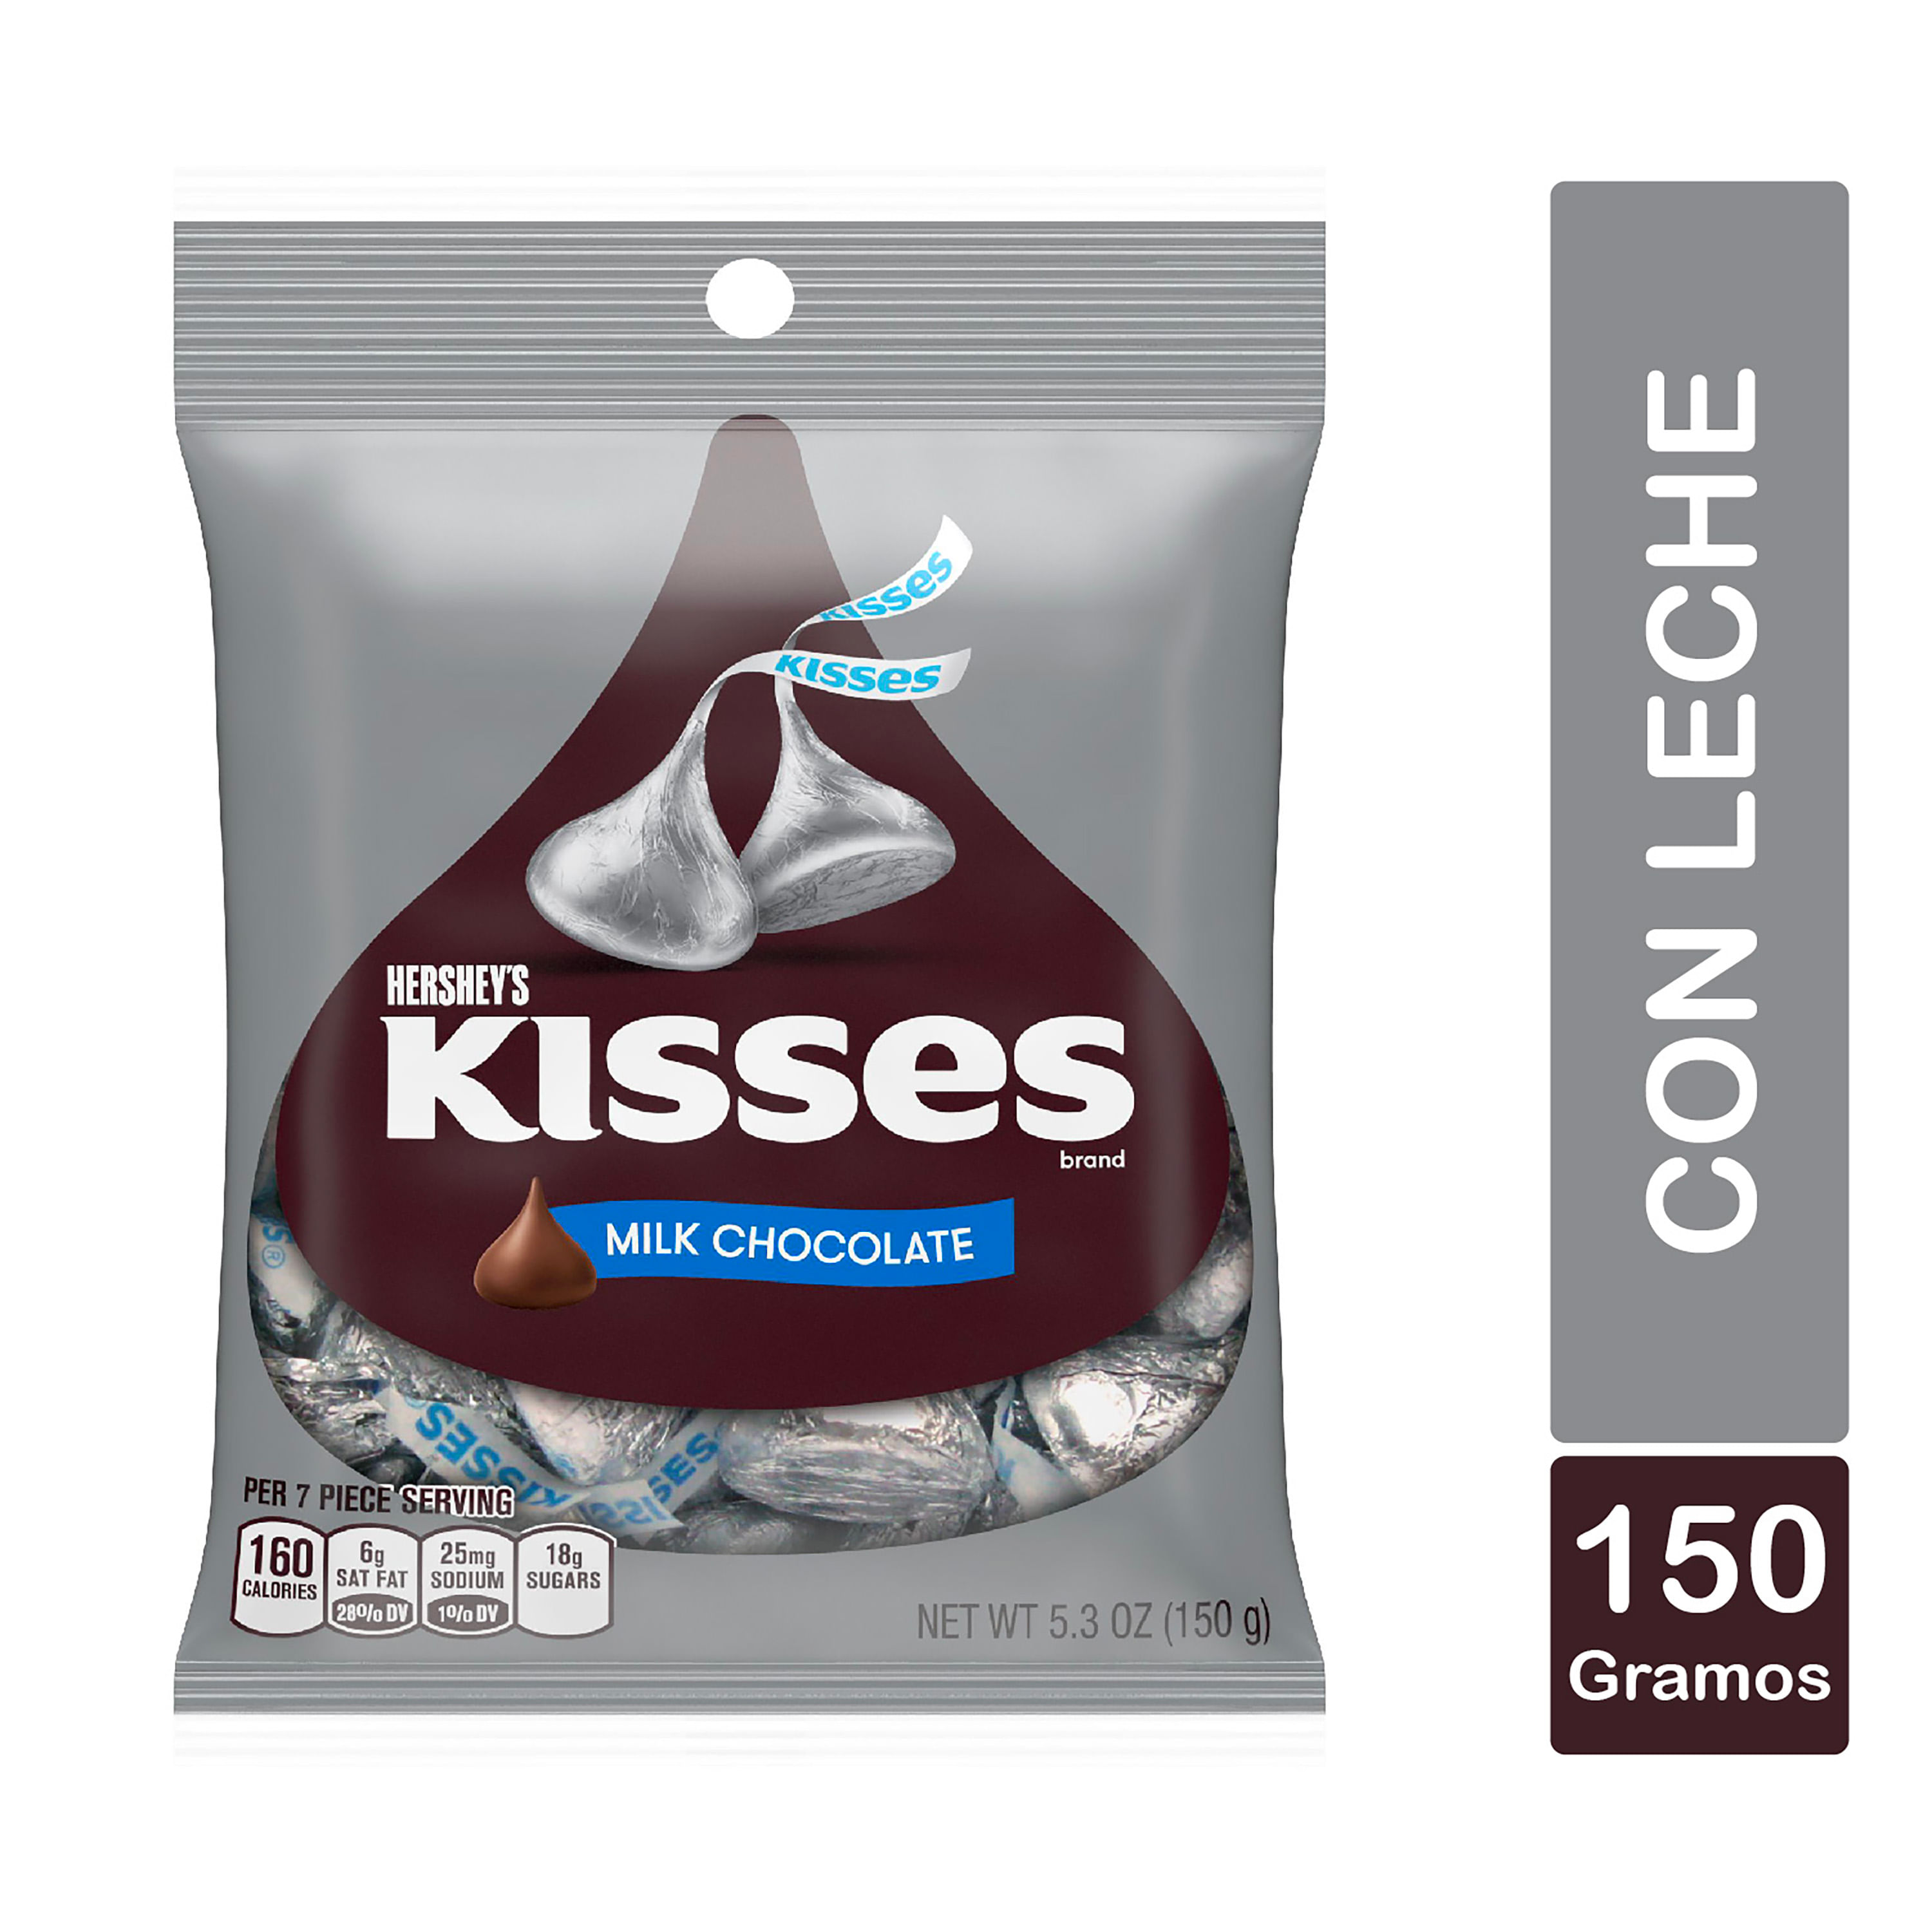 Chocolate-Marca-Hershey-s-Kisses-Milk-Chocolate-150g-1-28144